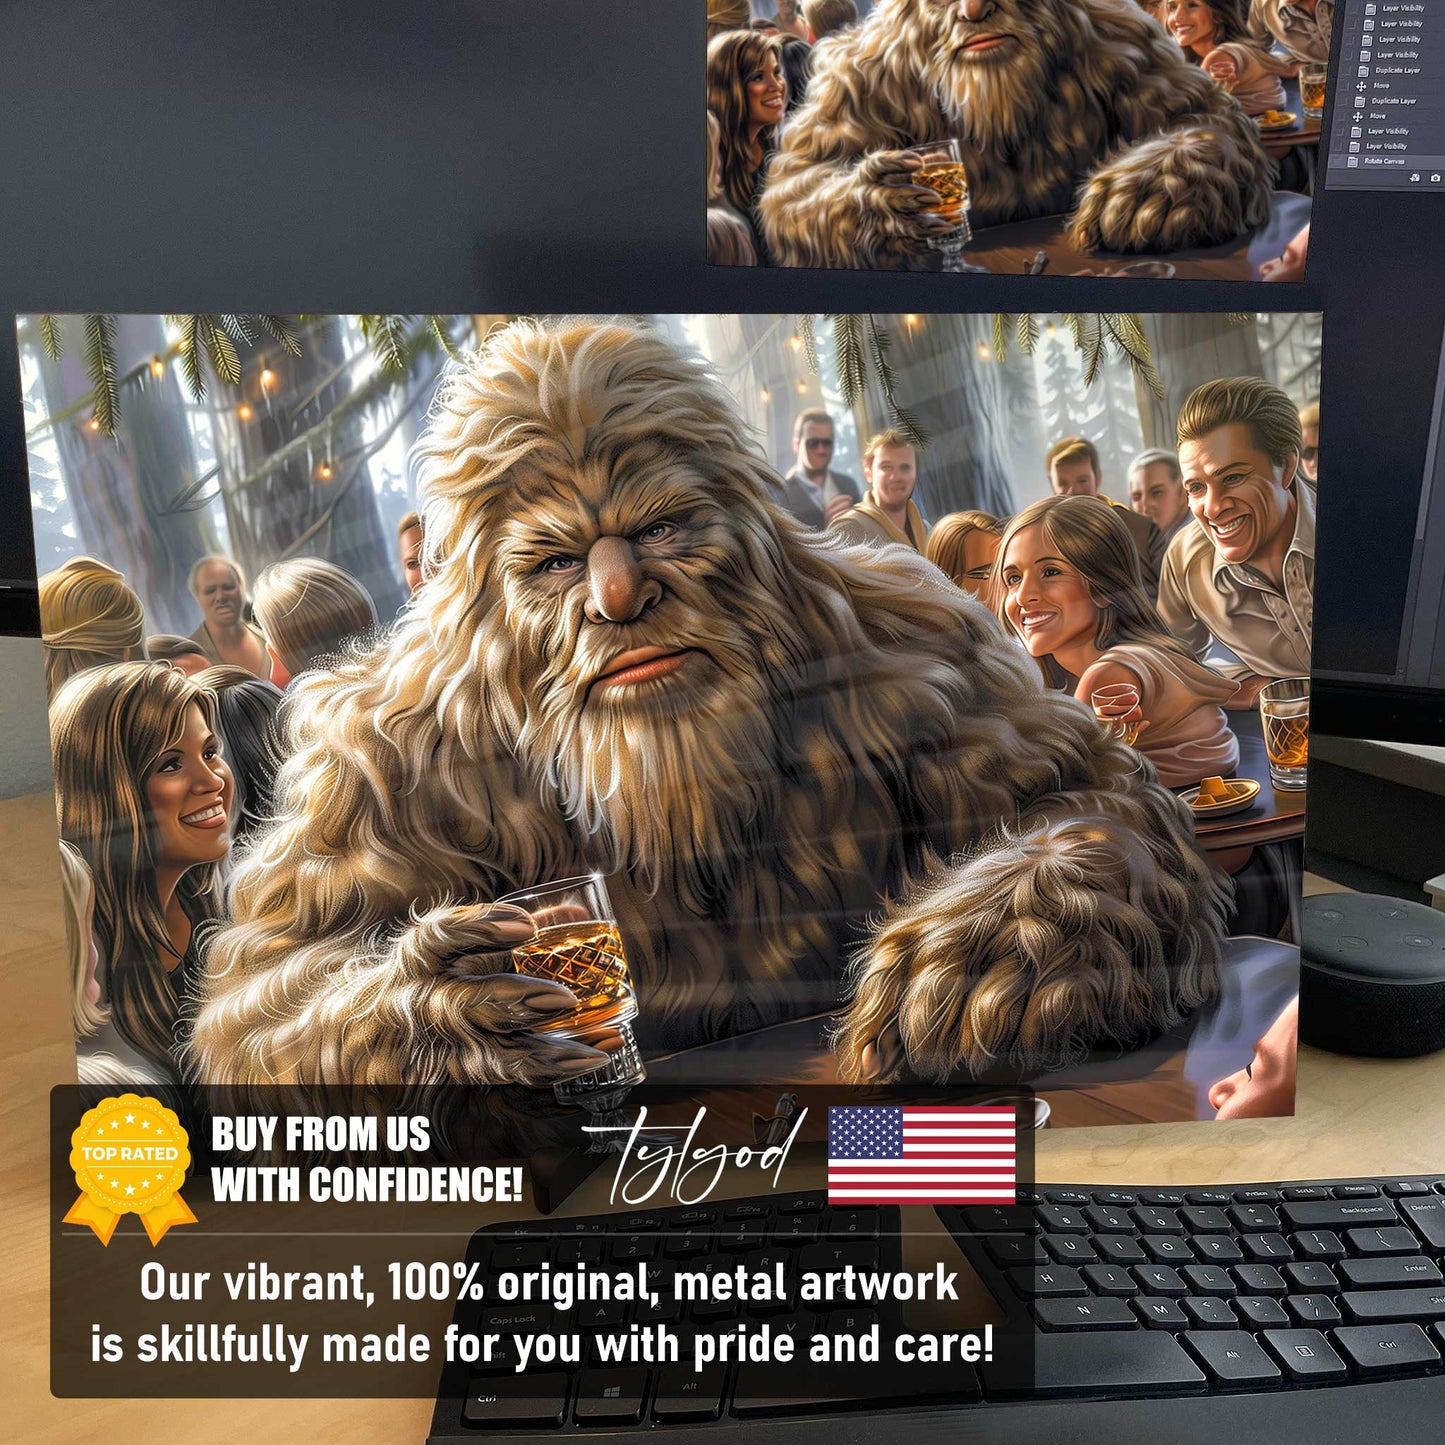 Sasquatch Whiskey Bigfoot Poster Metal Print